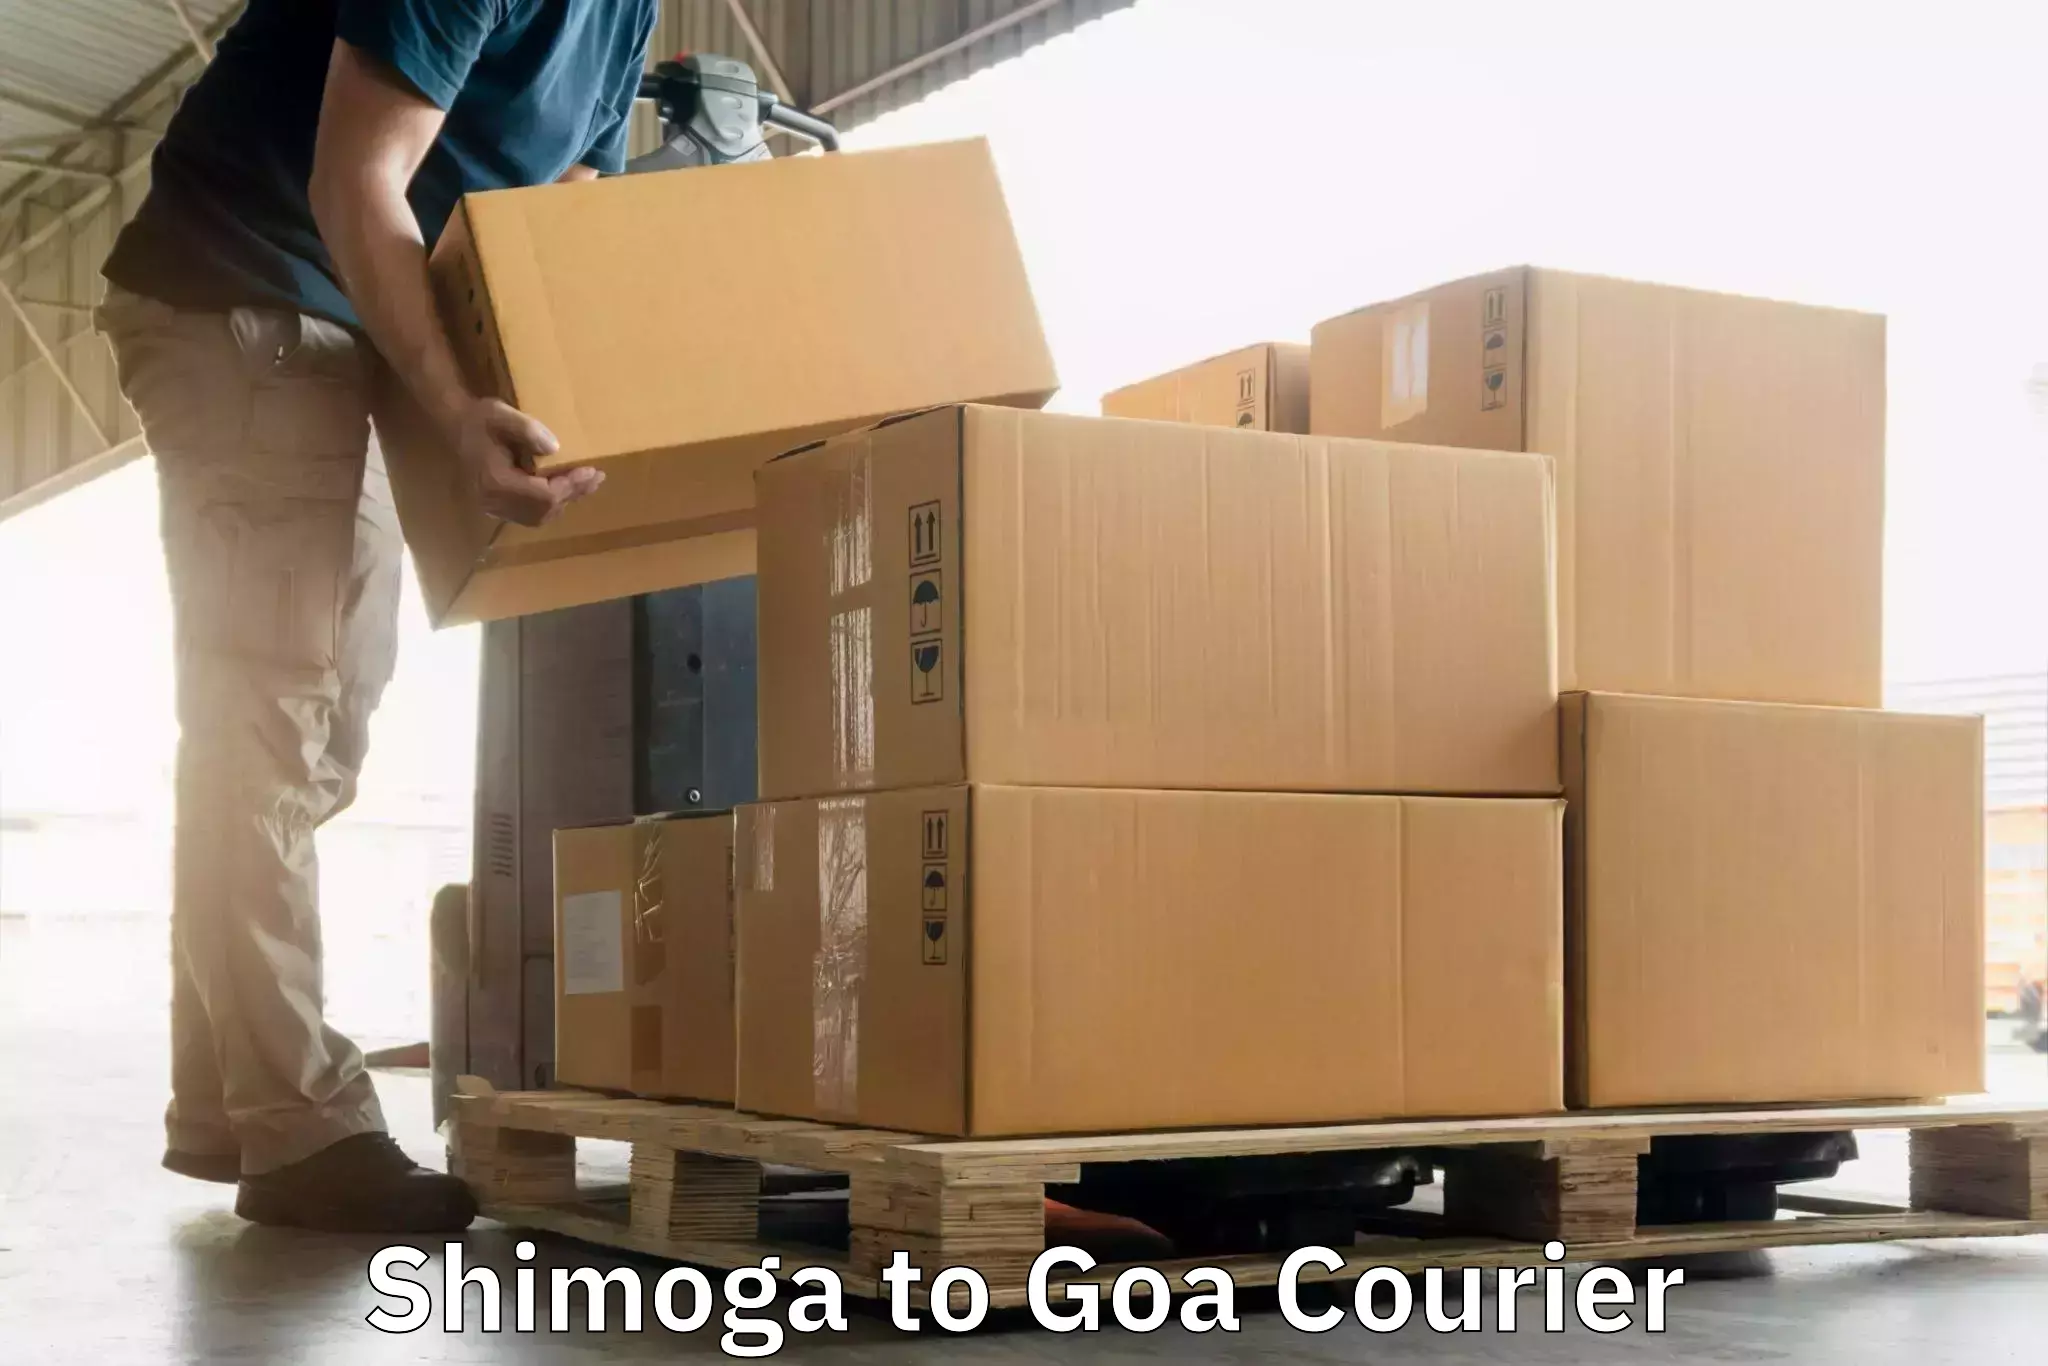 Express delivery capabilities Shimoga to Vasco da Gama